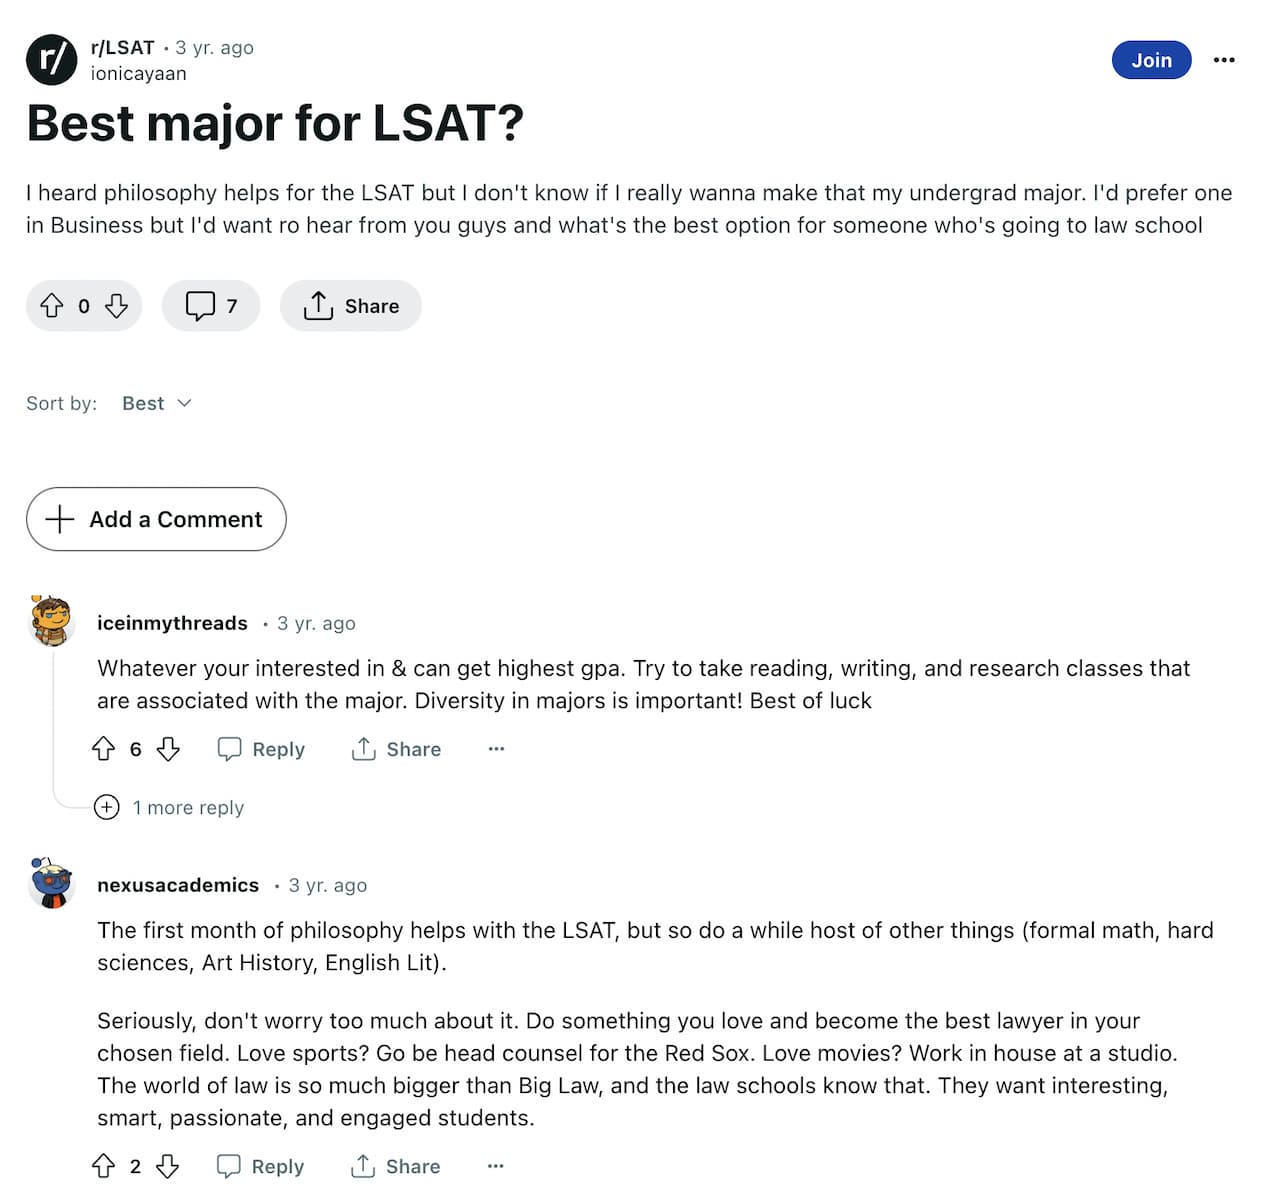 The Best major for LSAT Success